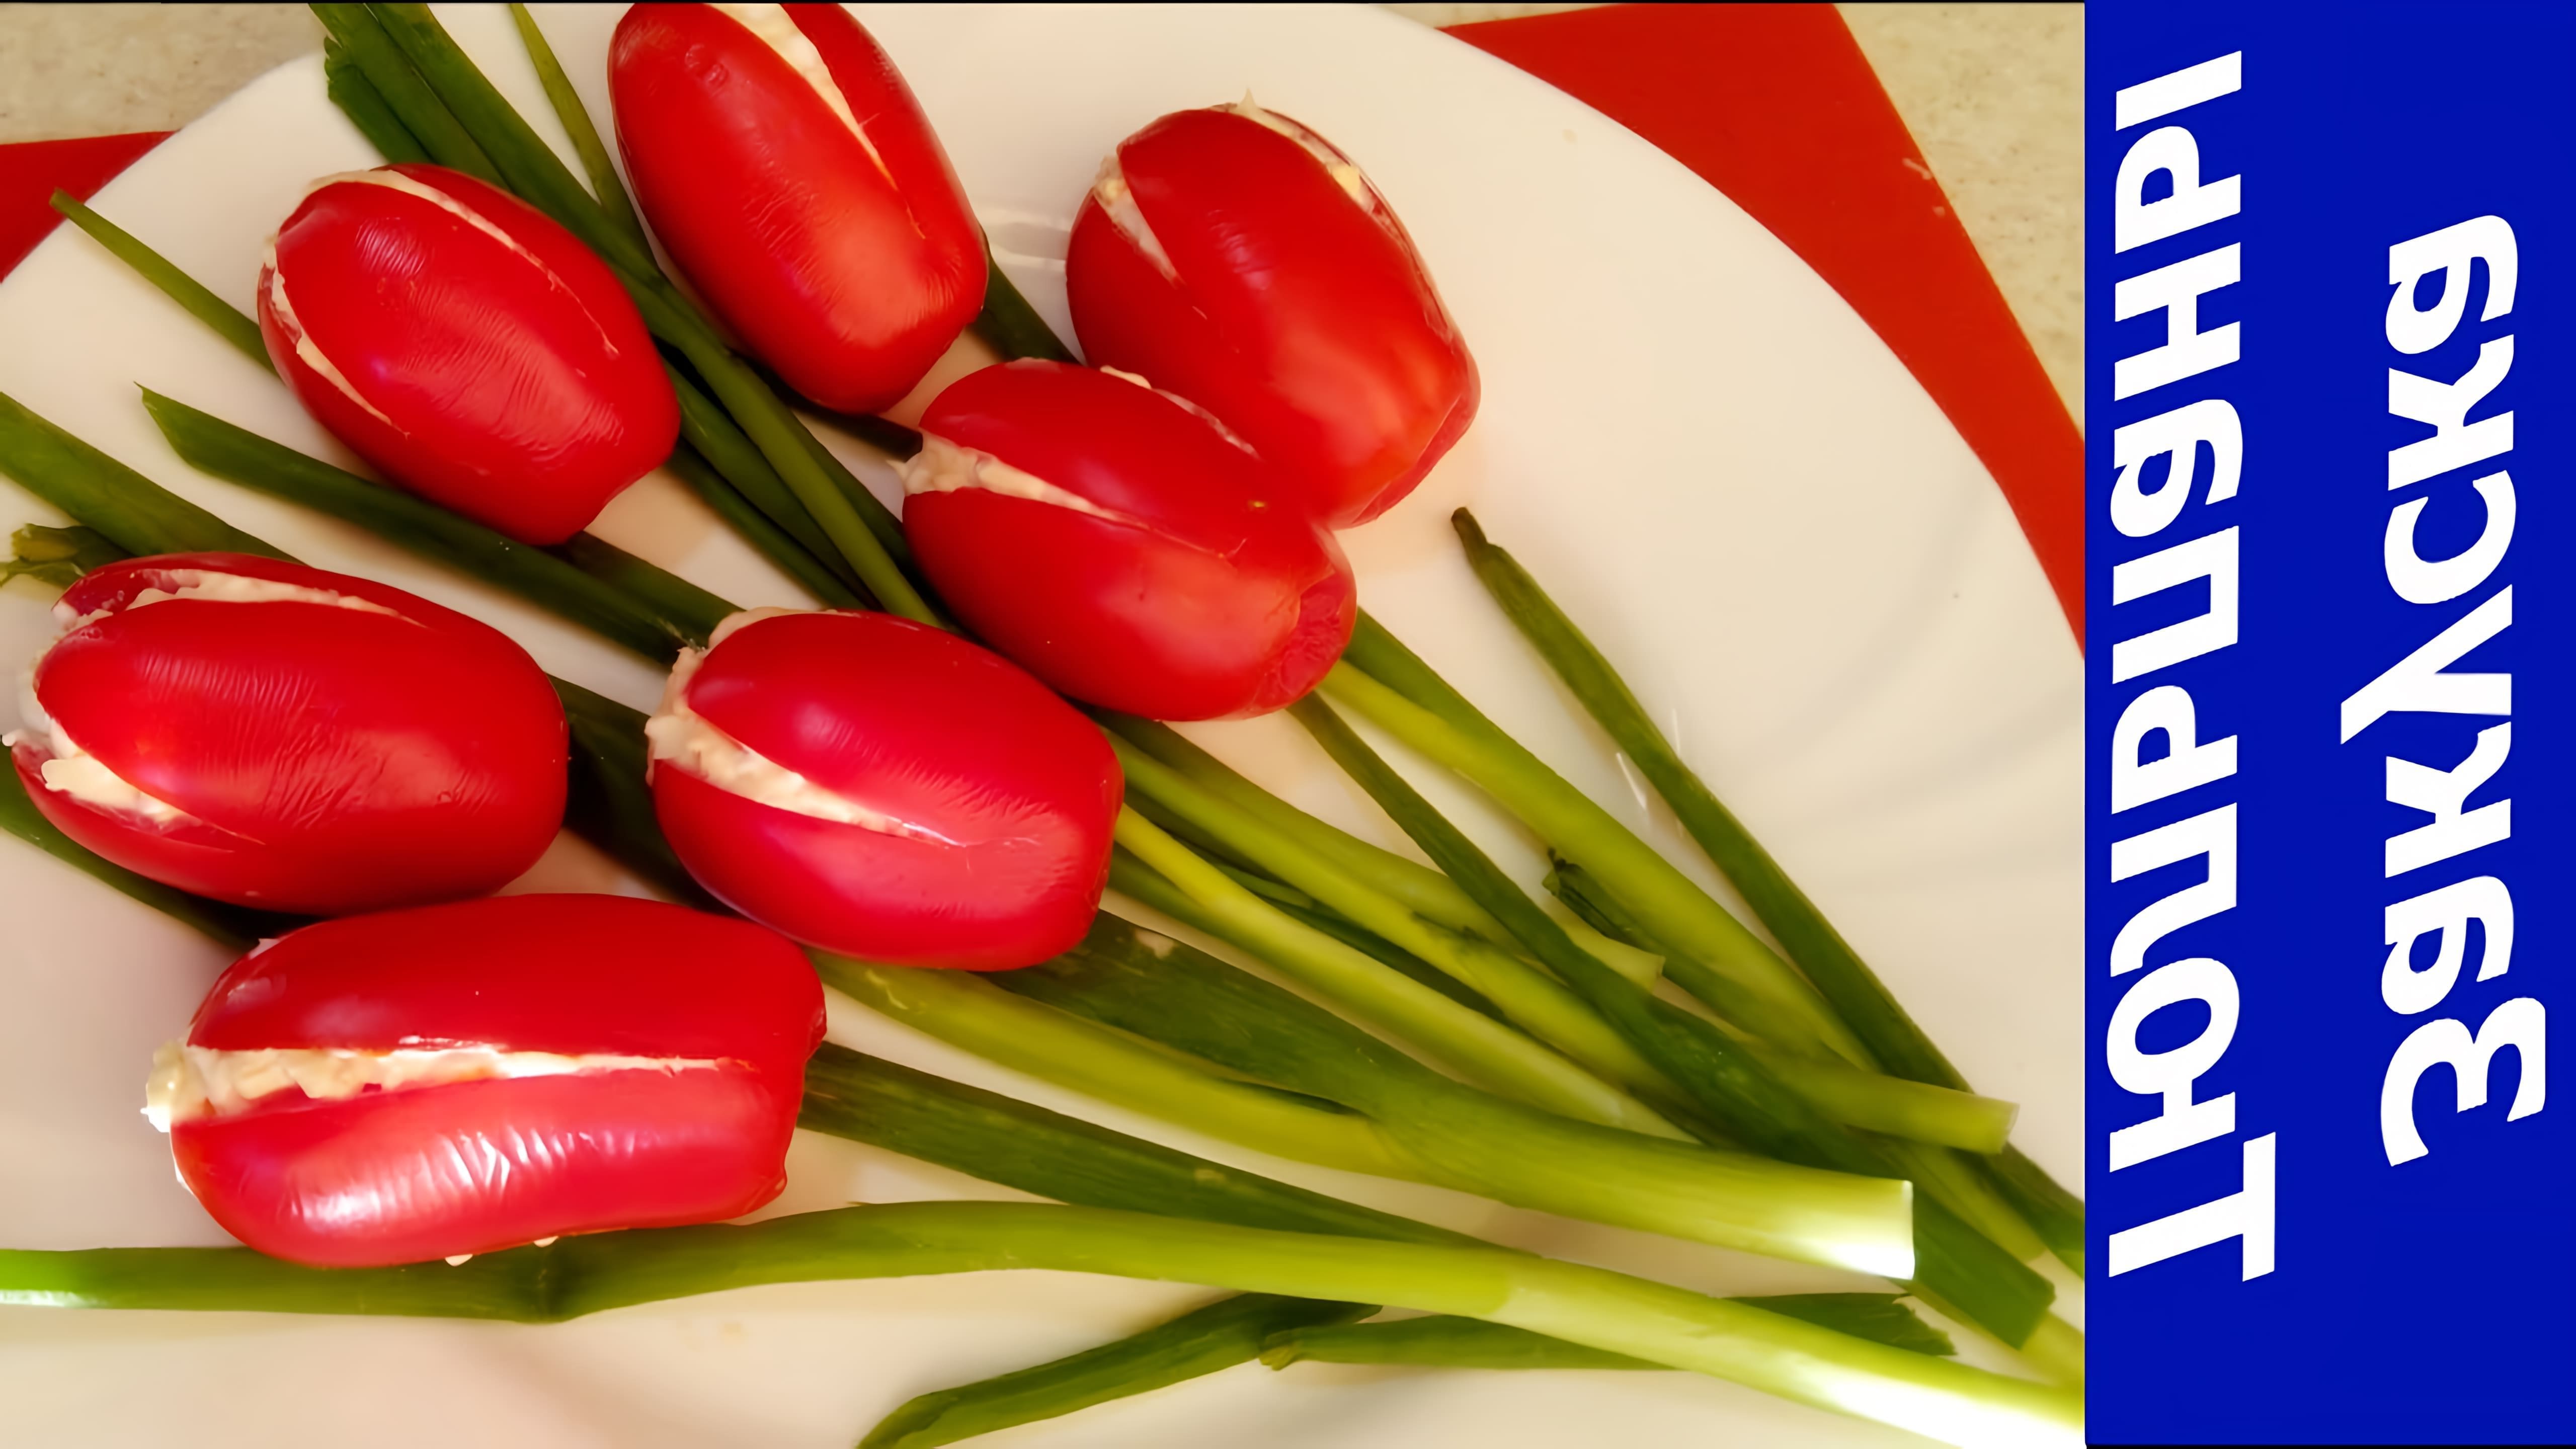 В этом видео демонстрируется рецепт приготовления закуски "Тюльпаны" из помидоров